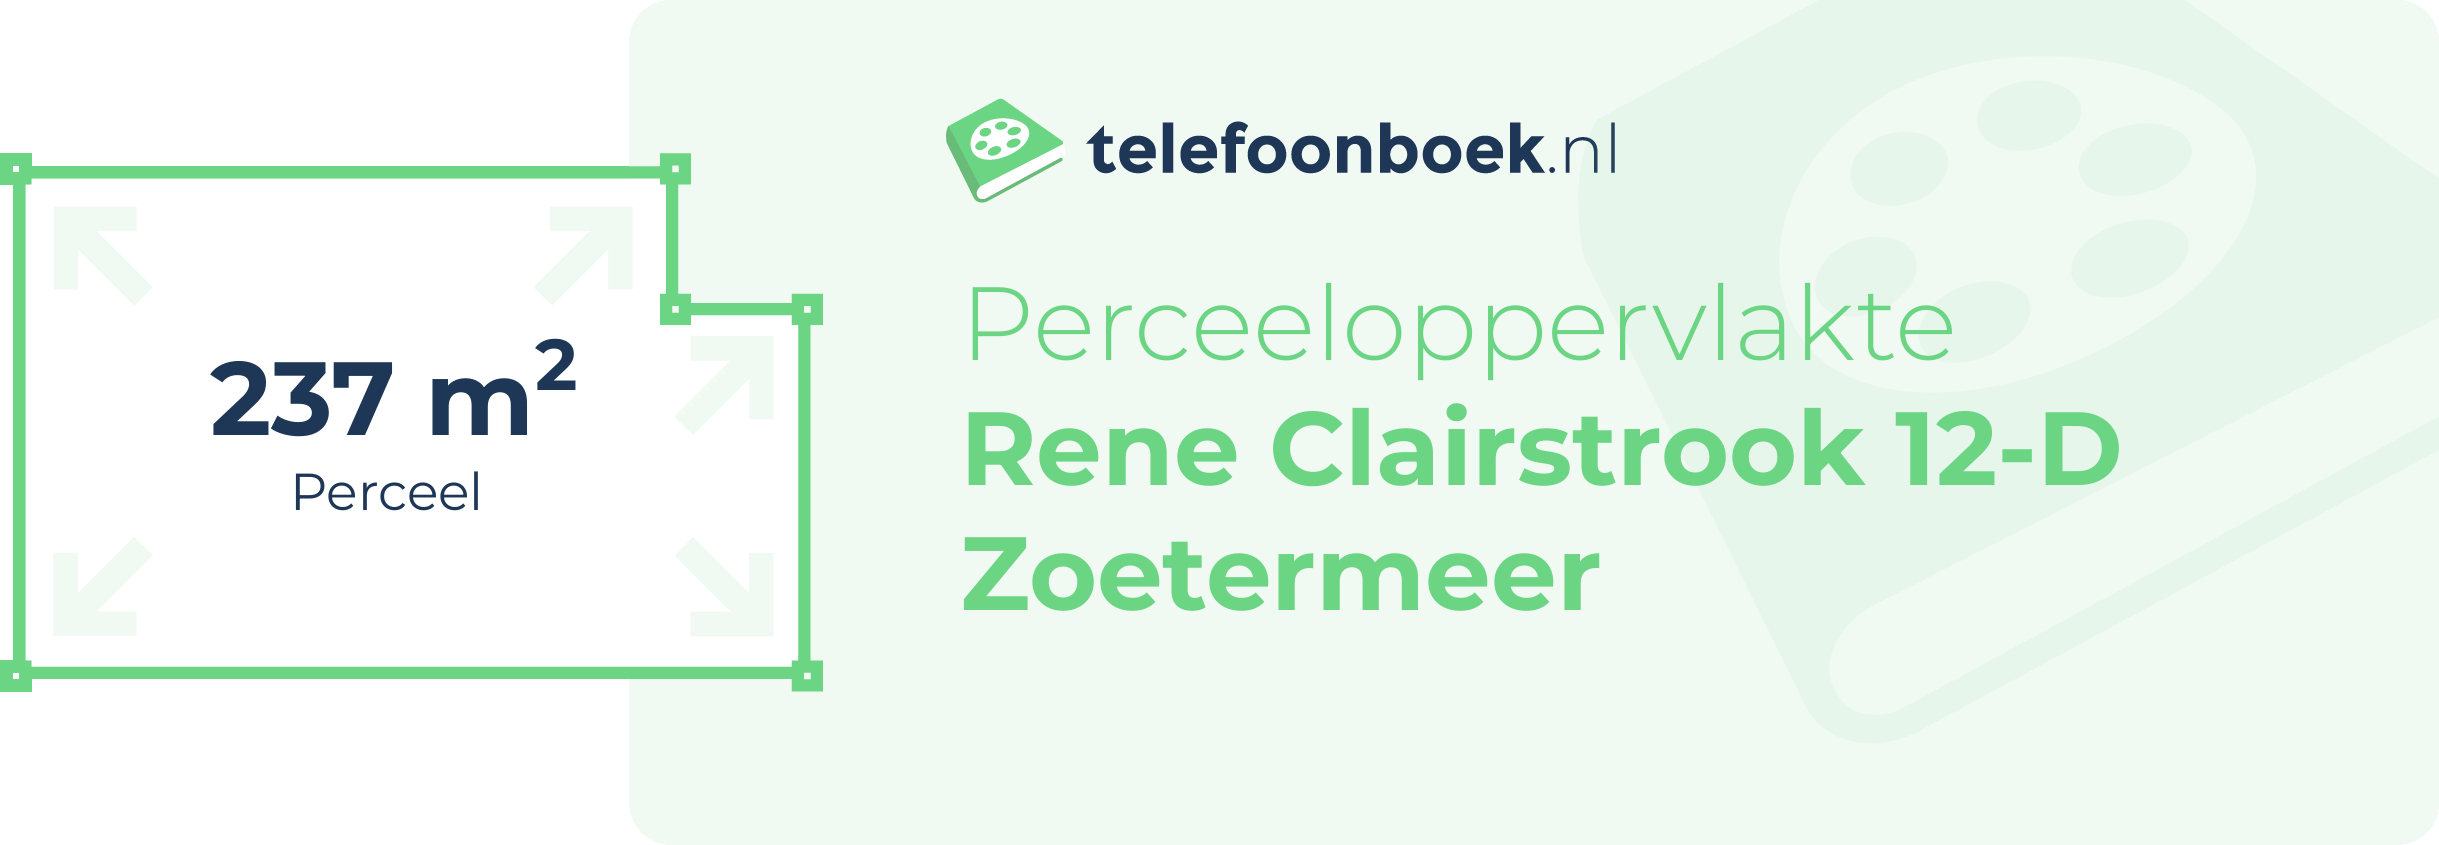 Perceeloppervlakte Rene Clairstrook 12-D Zoetermeer